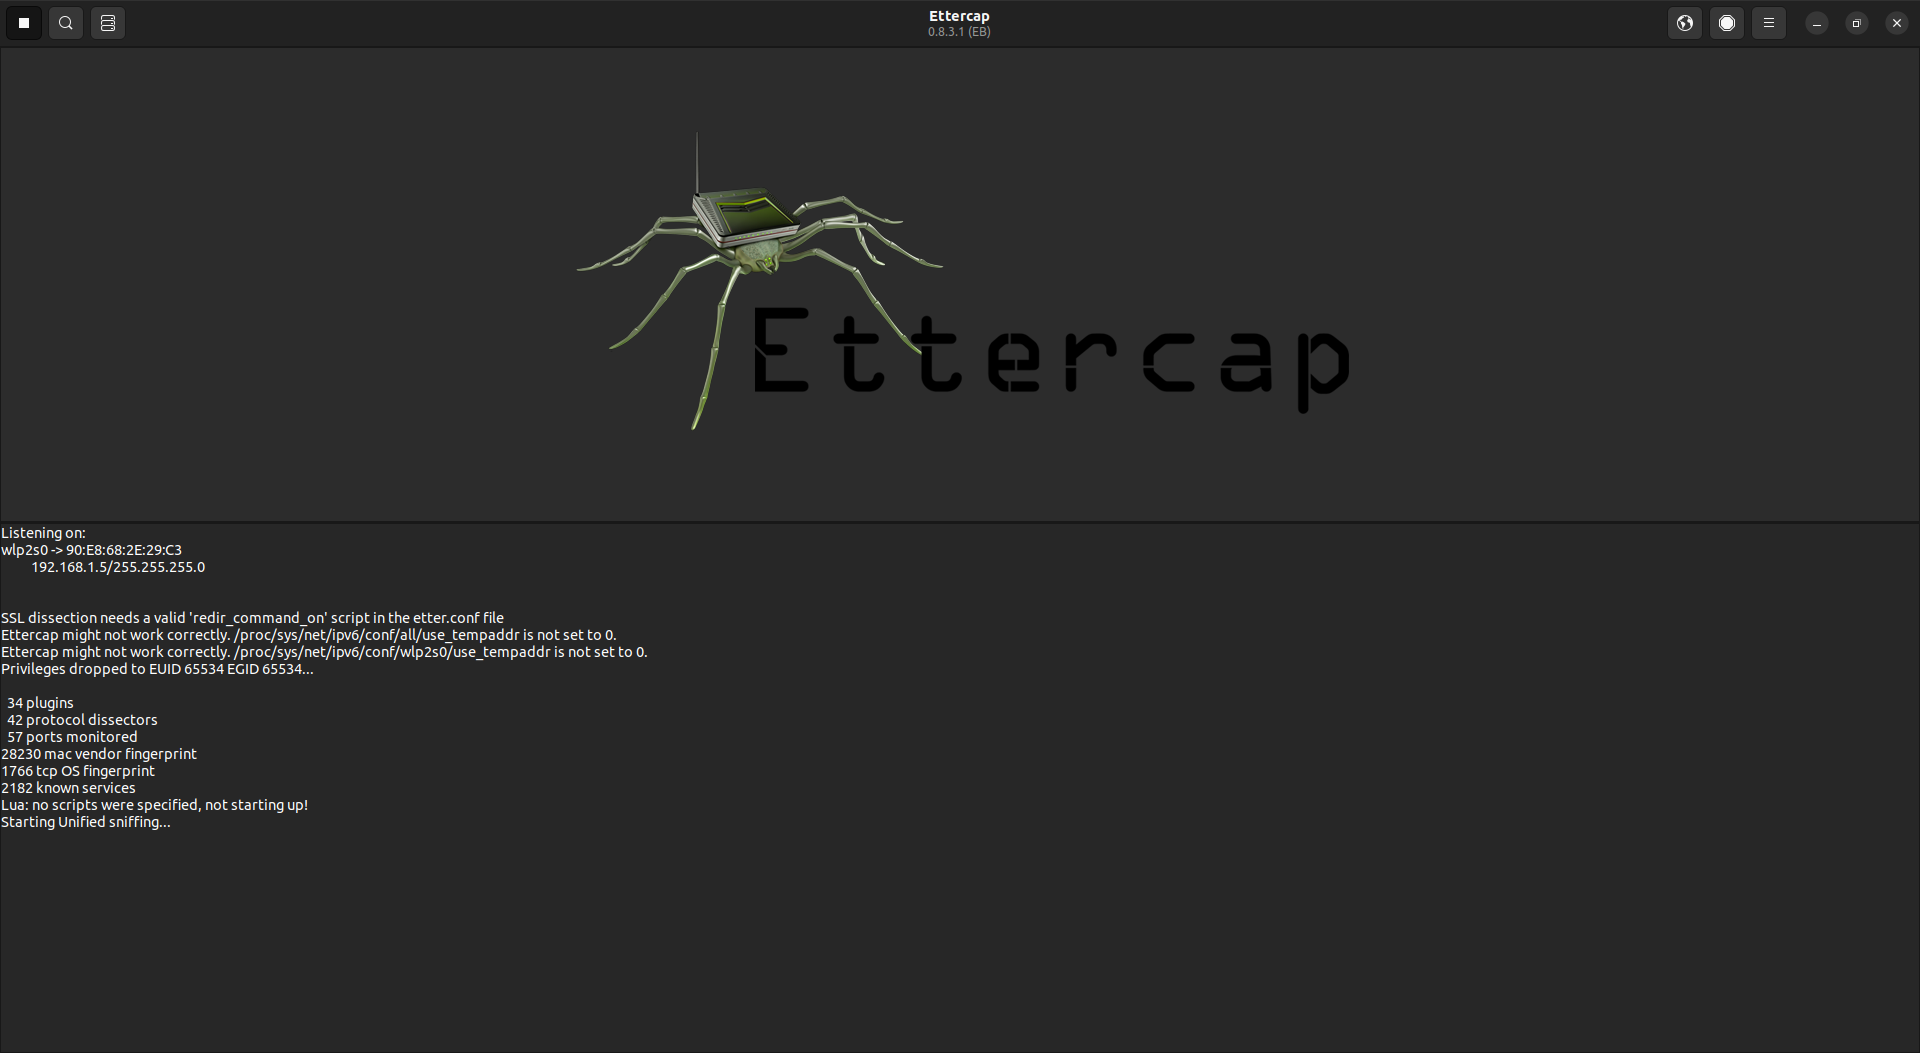 Ettercap free DAST tool